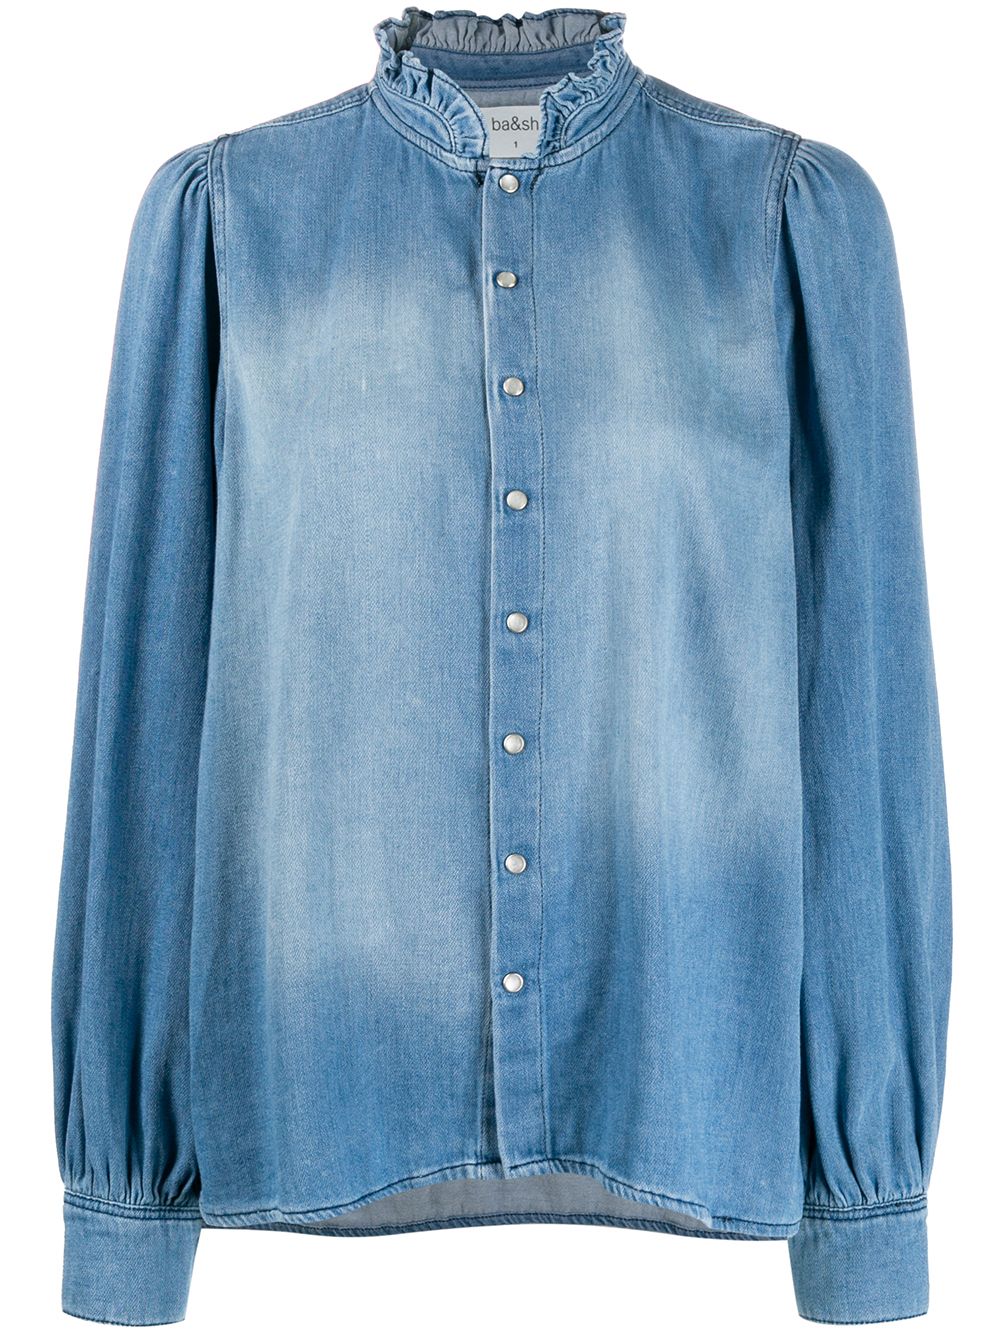 фото Ba&sh джинсовая рубашка axelle